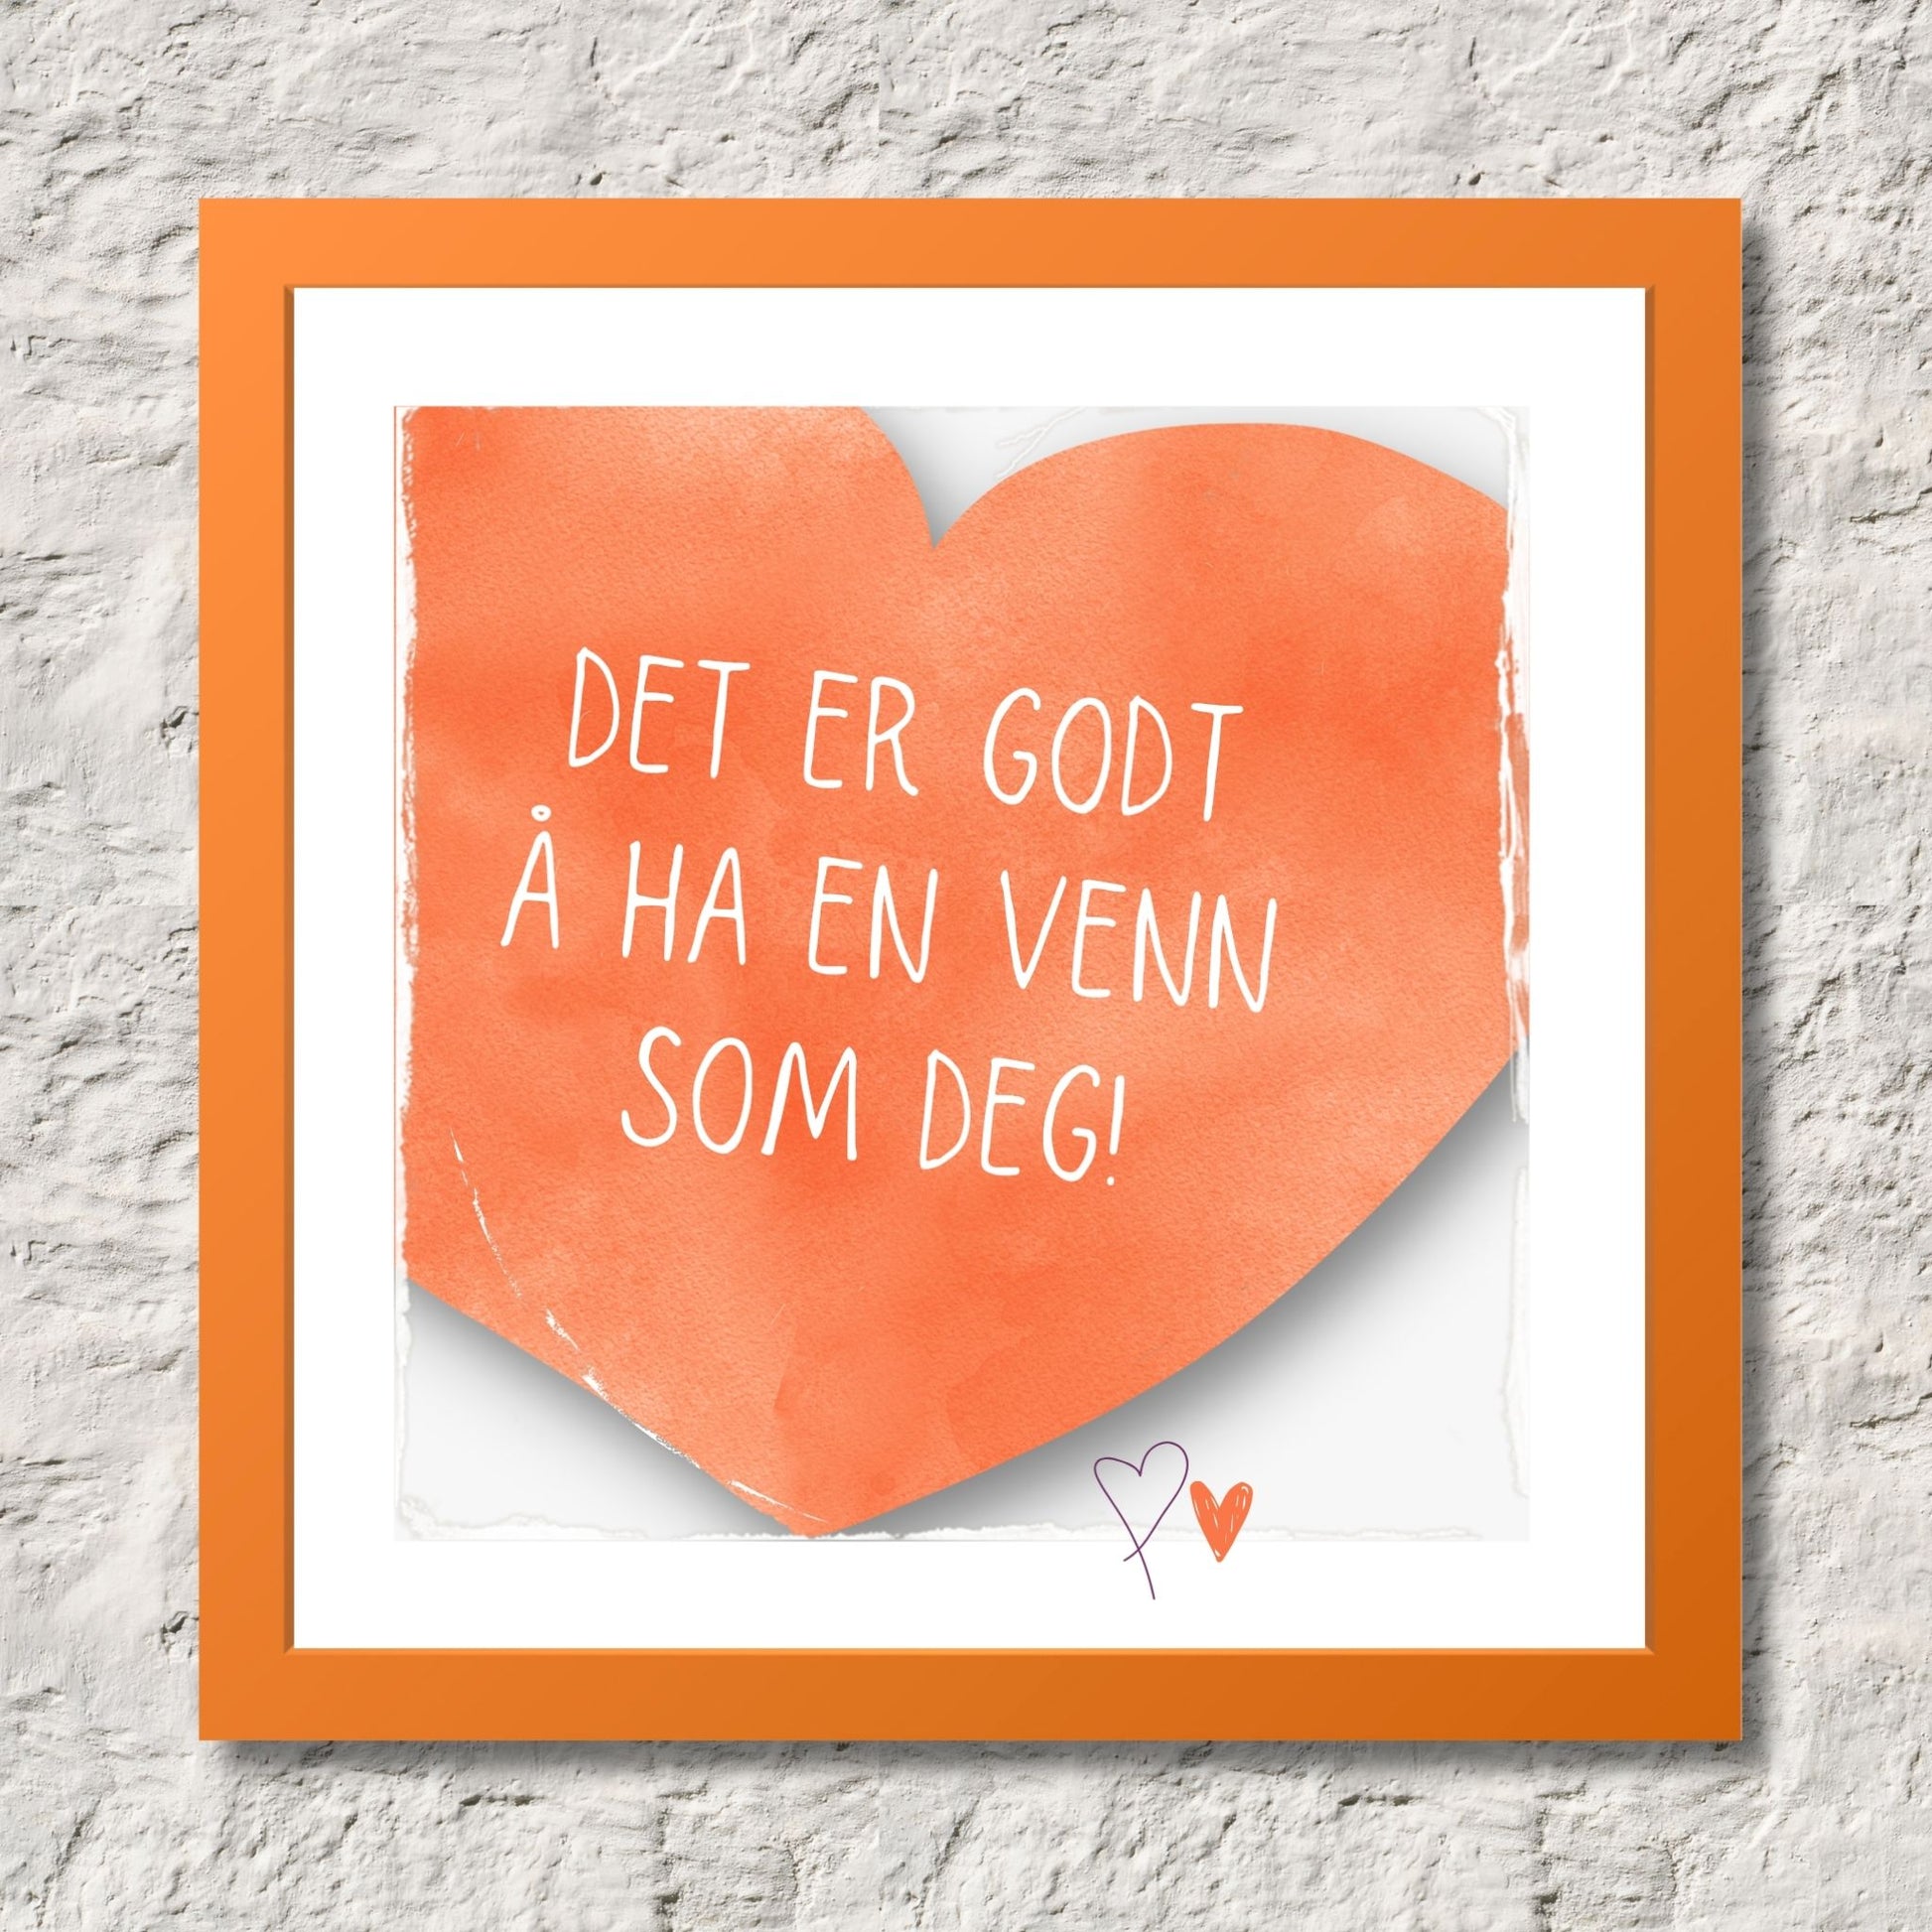 Plakat med oransje hjerte og tekst "Det er godt å ha en venn som deg". Med hvit kant på 1,5 cm. Illustrasjon viser plakat i oransje ramme.